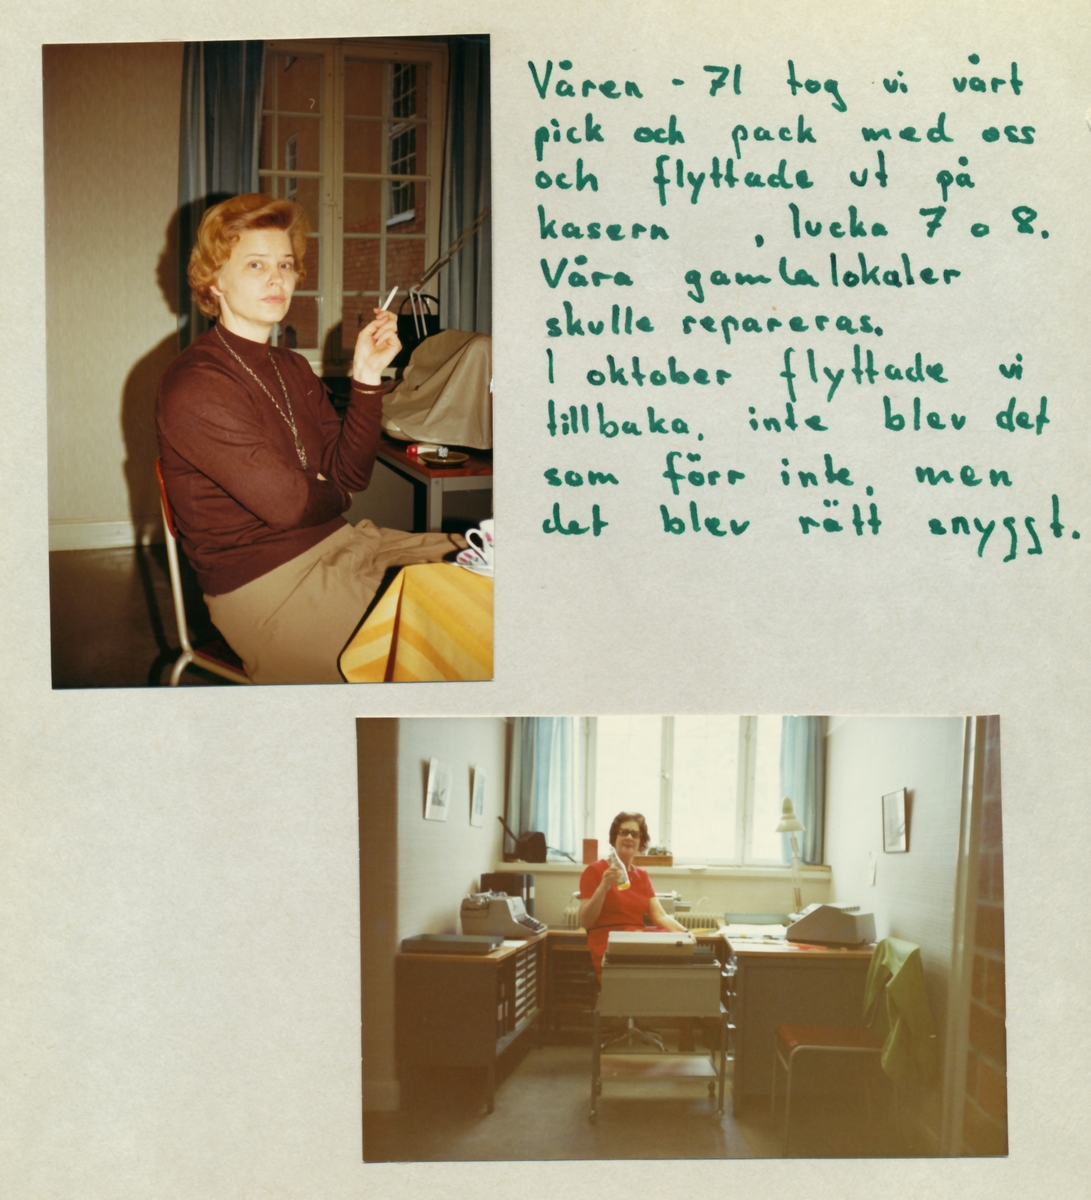 Kassans fotoalbum, sid 20

Våren 1971 flyttade vi till två logement eftersom våra lokaler i by 11 skulle renoveras. Den 1 oktober flyttade vi tillbaks igen, inte som förr, men rätt snyggt.

Bild 1. Gull Eriksson

Bild 2. Elna Fredrikson.